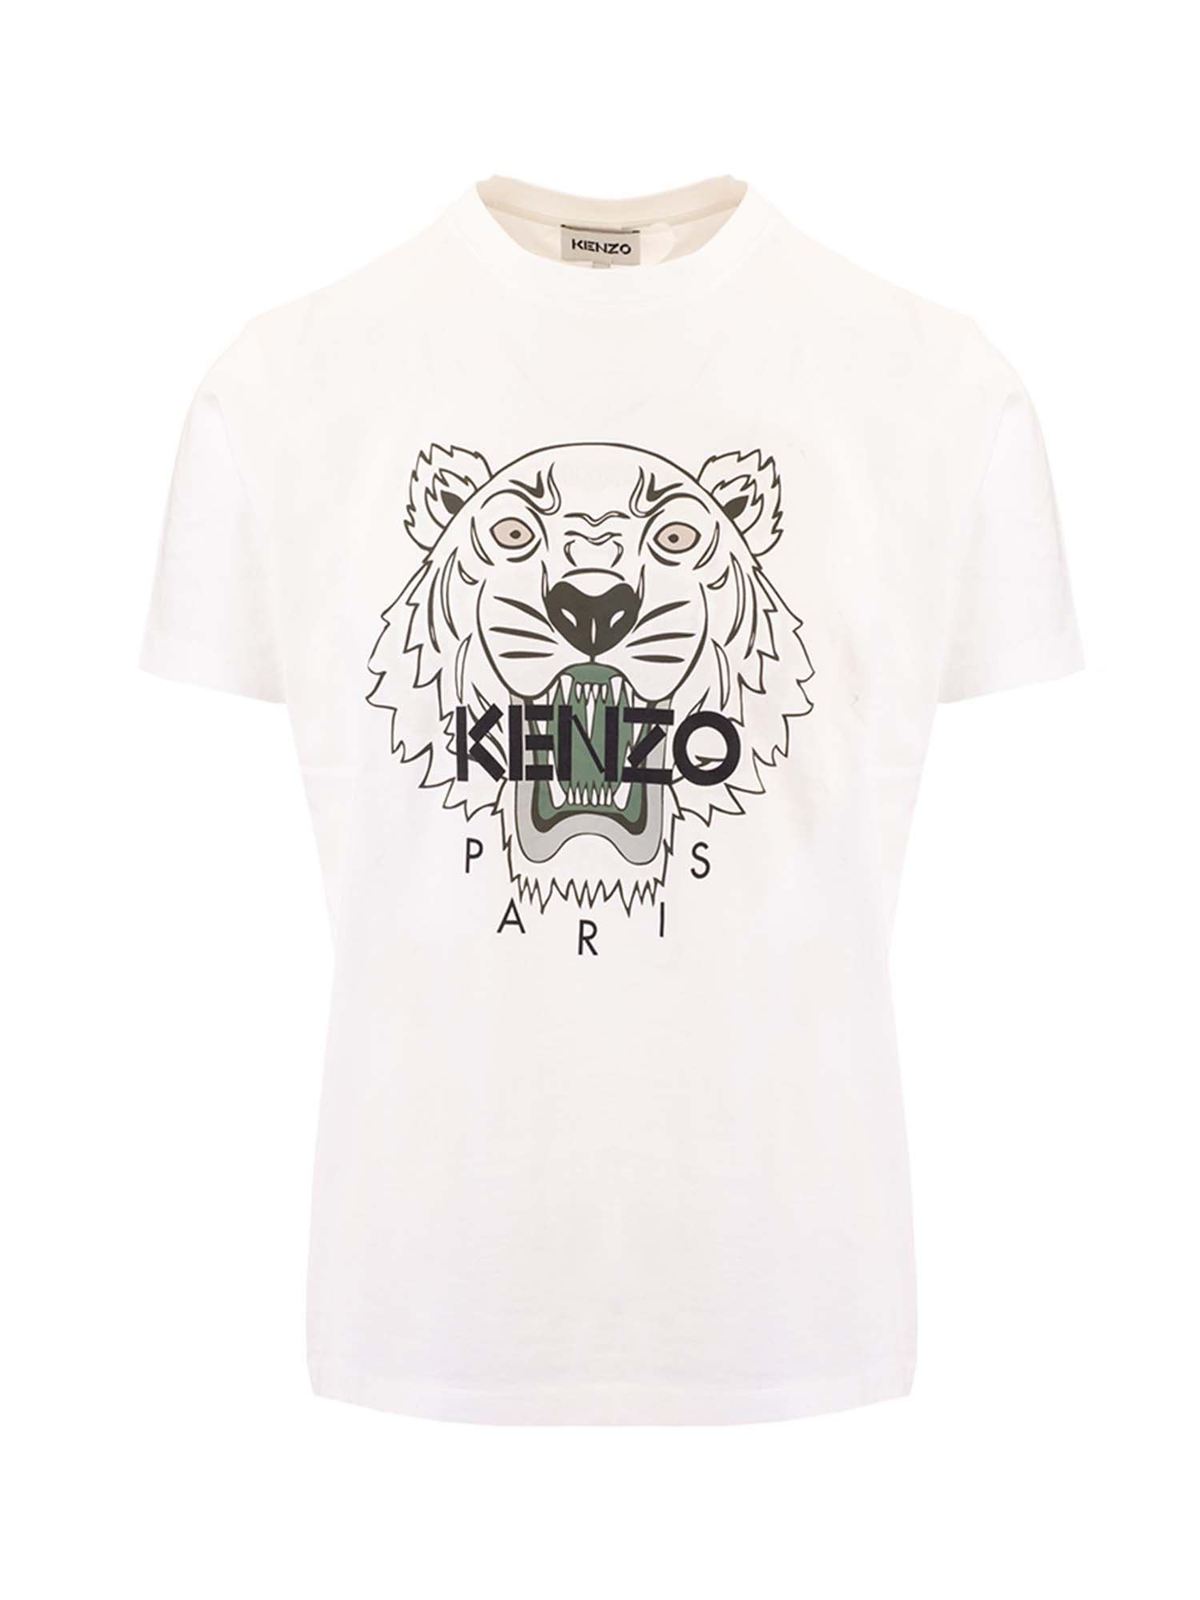 kenzo white top